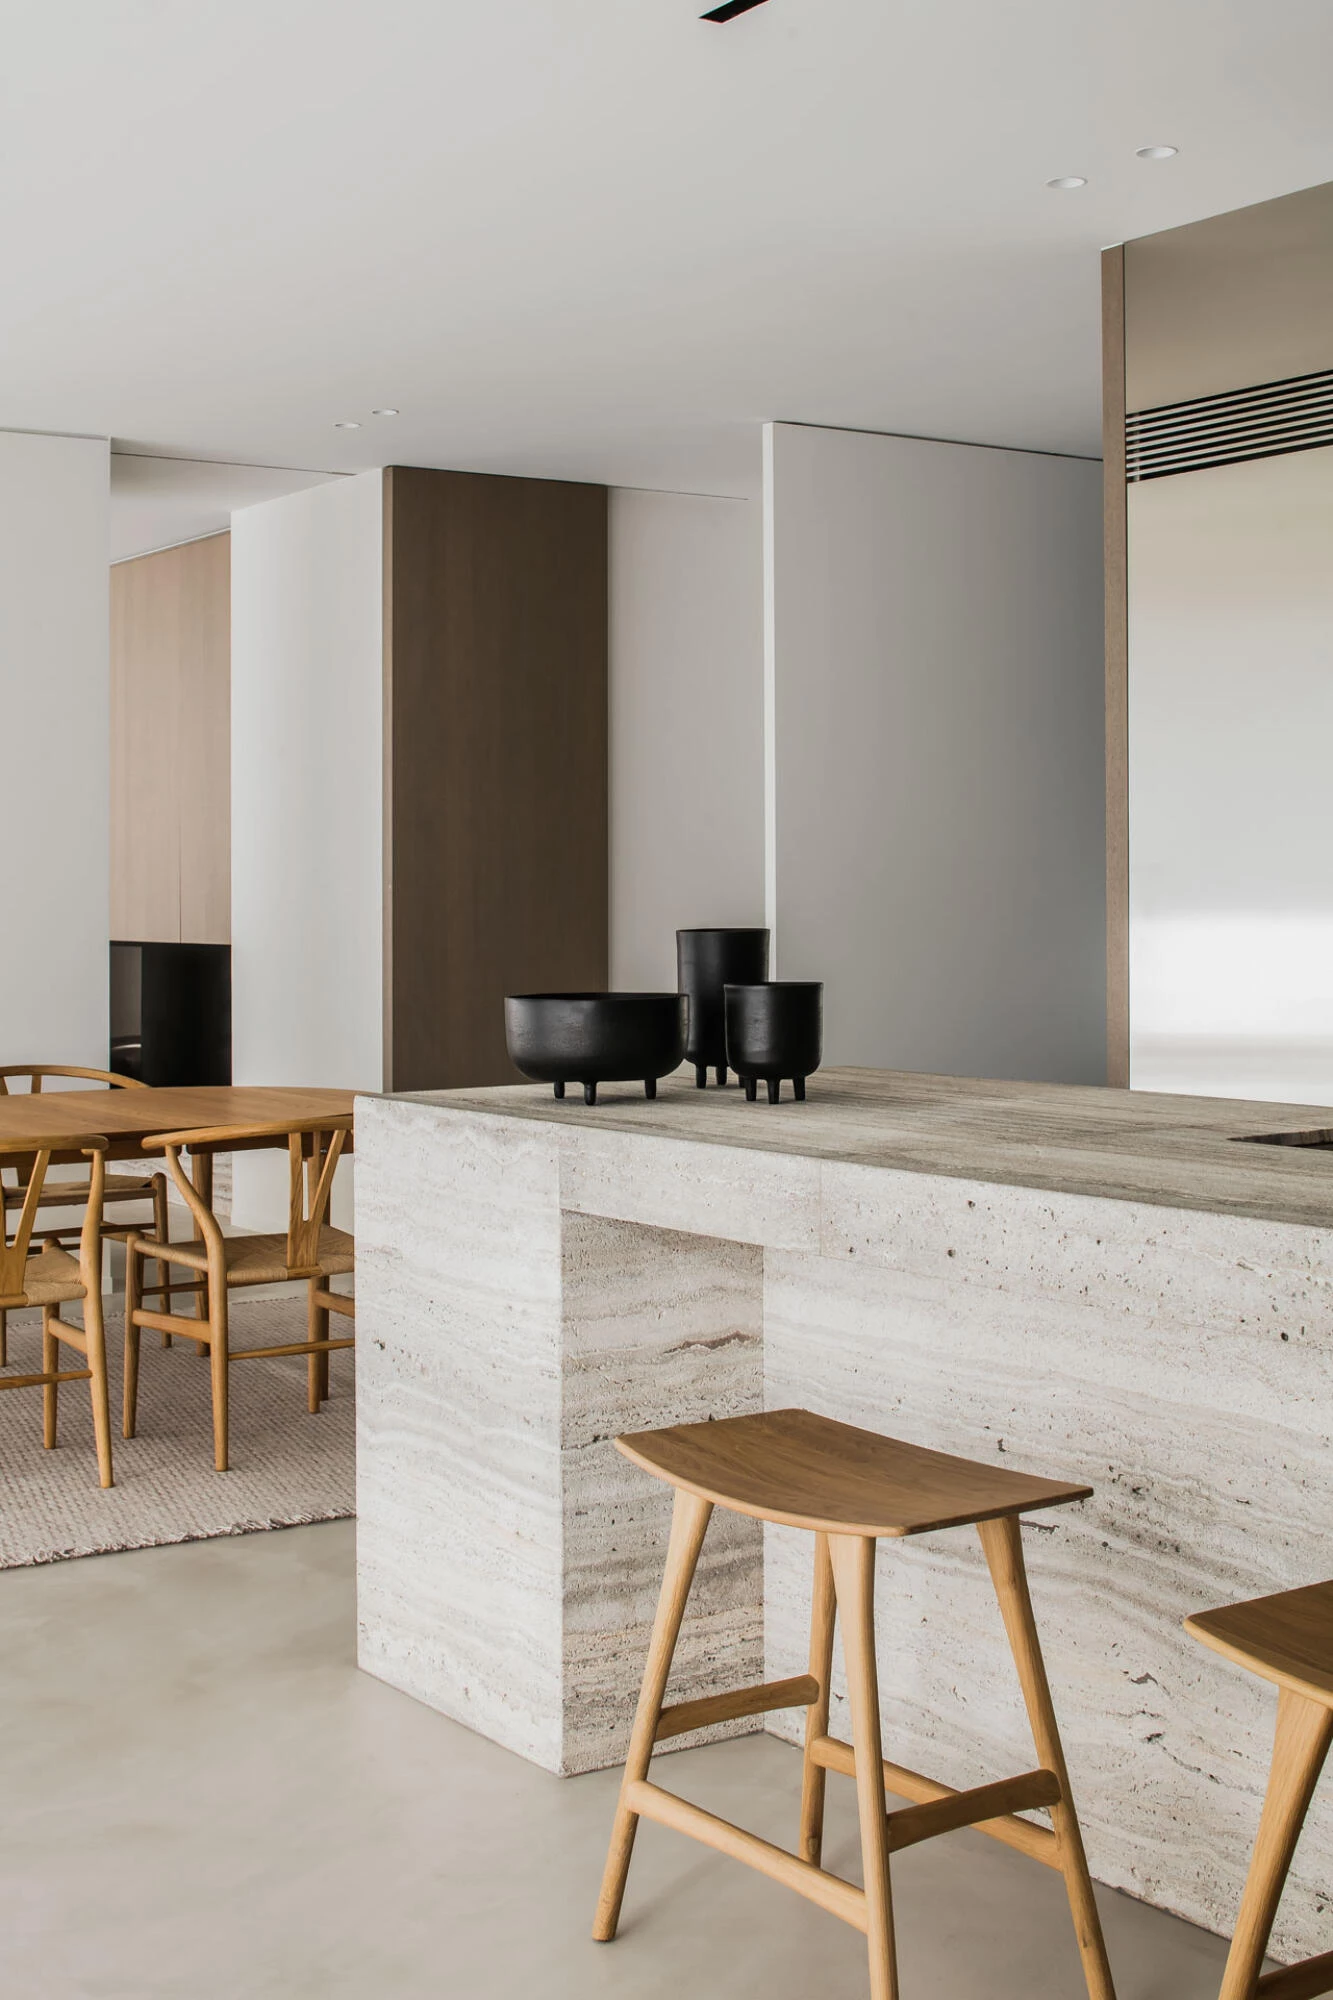 Thalostuc stucco floor in minimalist kitchen in interior of Pieter Vanrenterghem